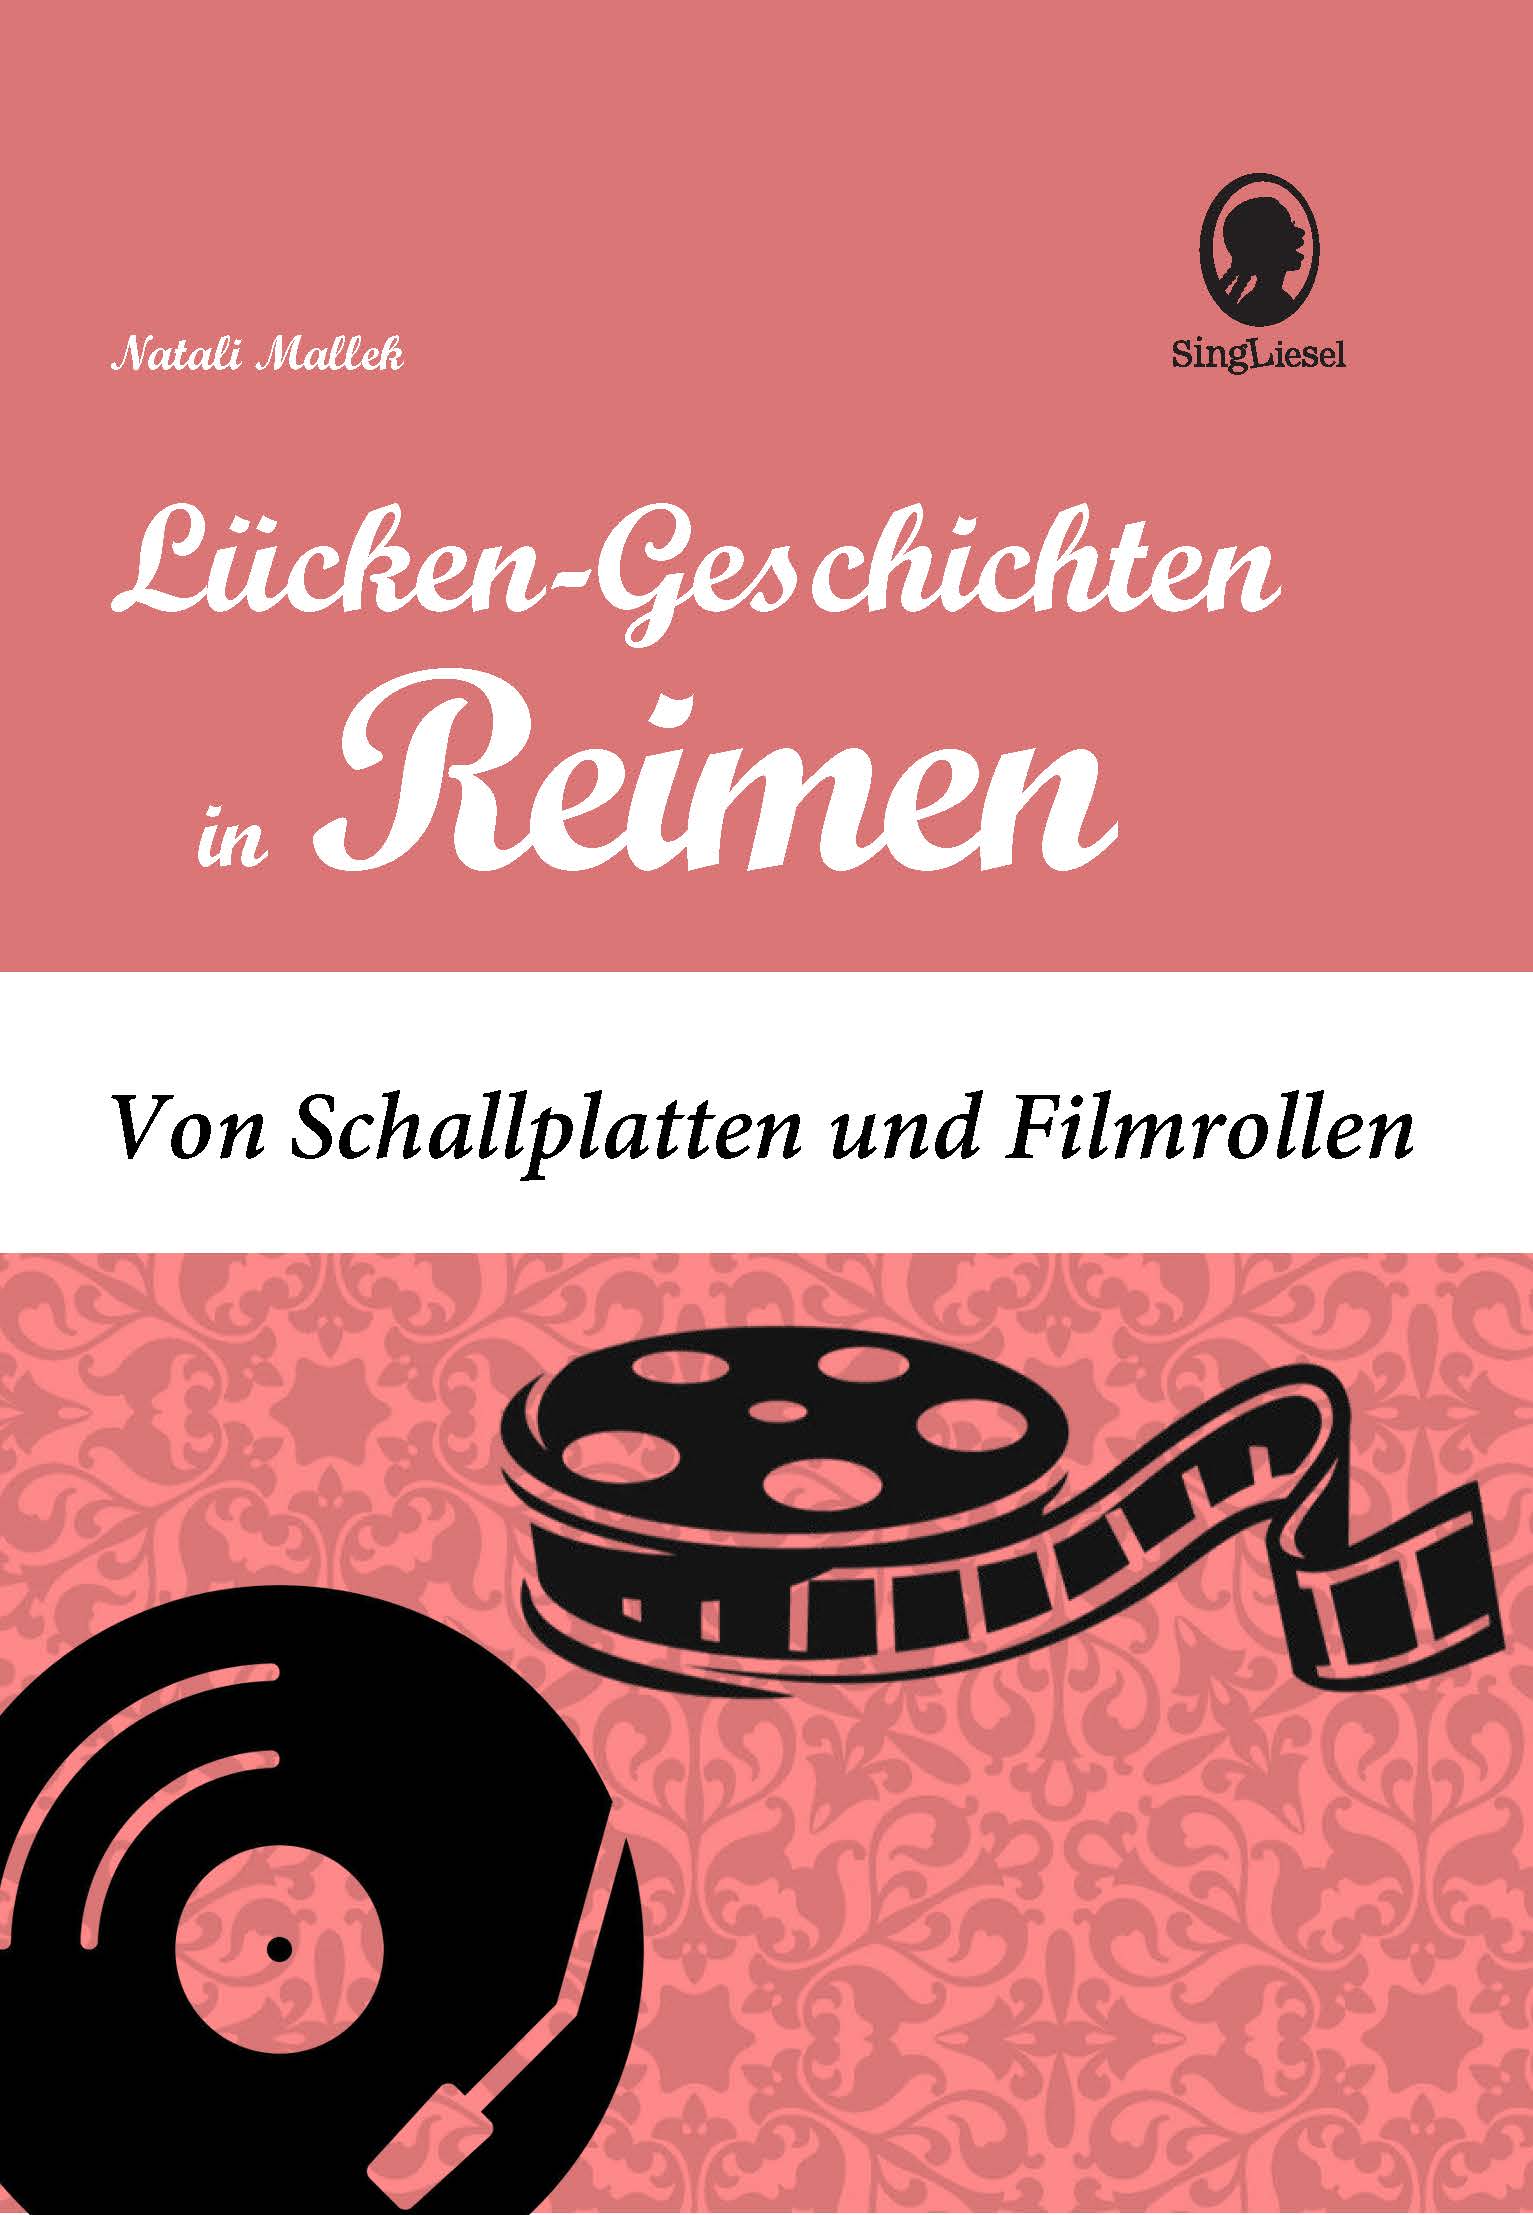 Lücken-Geschichten in Reimen. Kino. Musik. Für Senioren. Cover